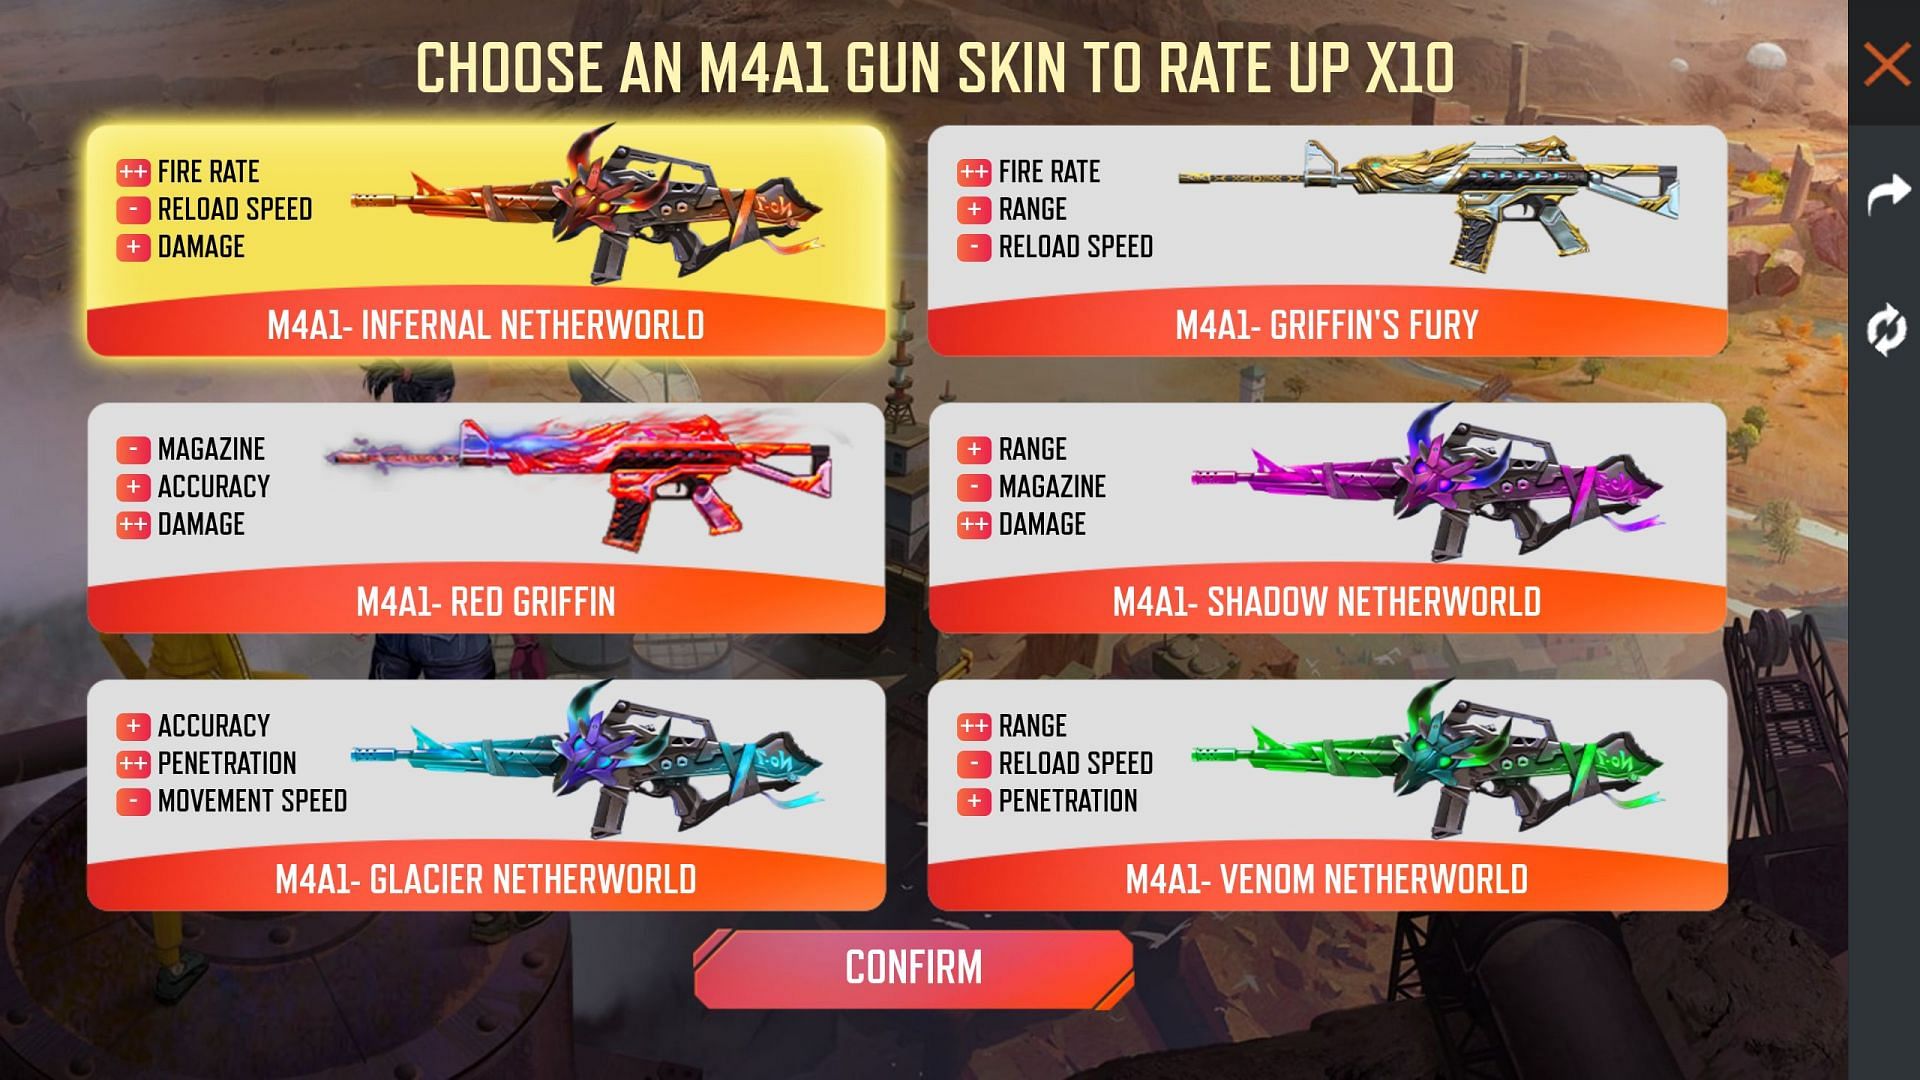 Users have six separate M4A1 gun skins (Image via Garena)